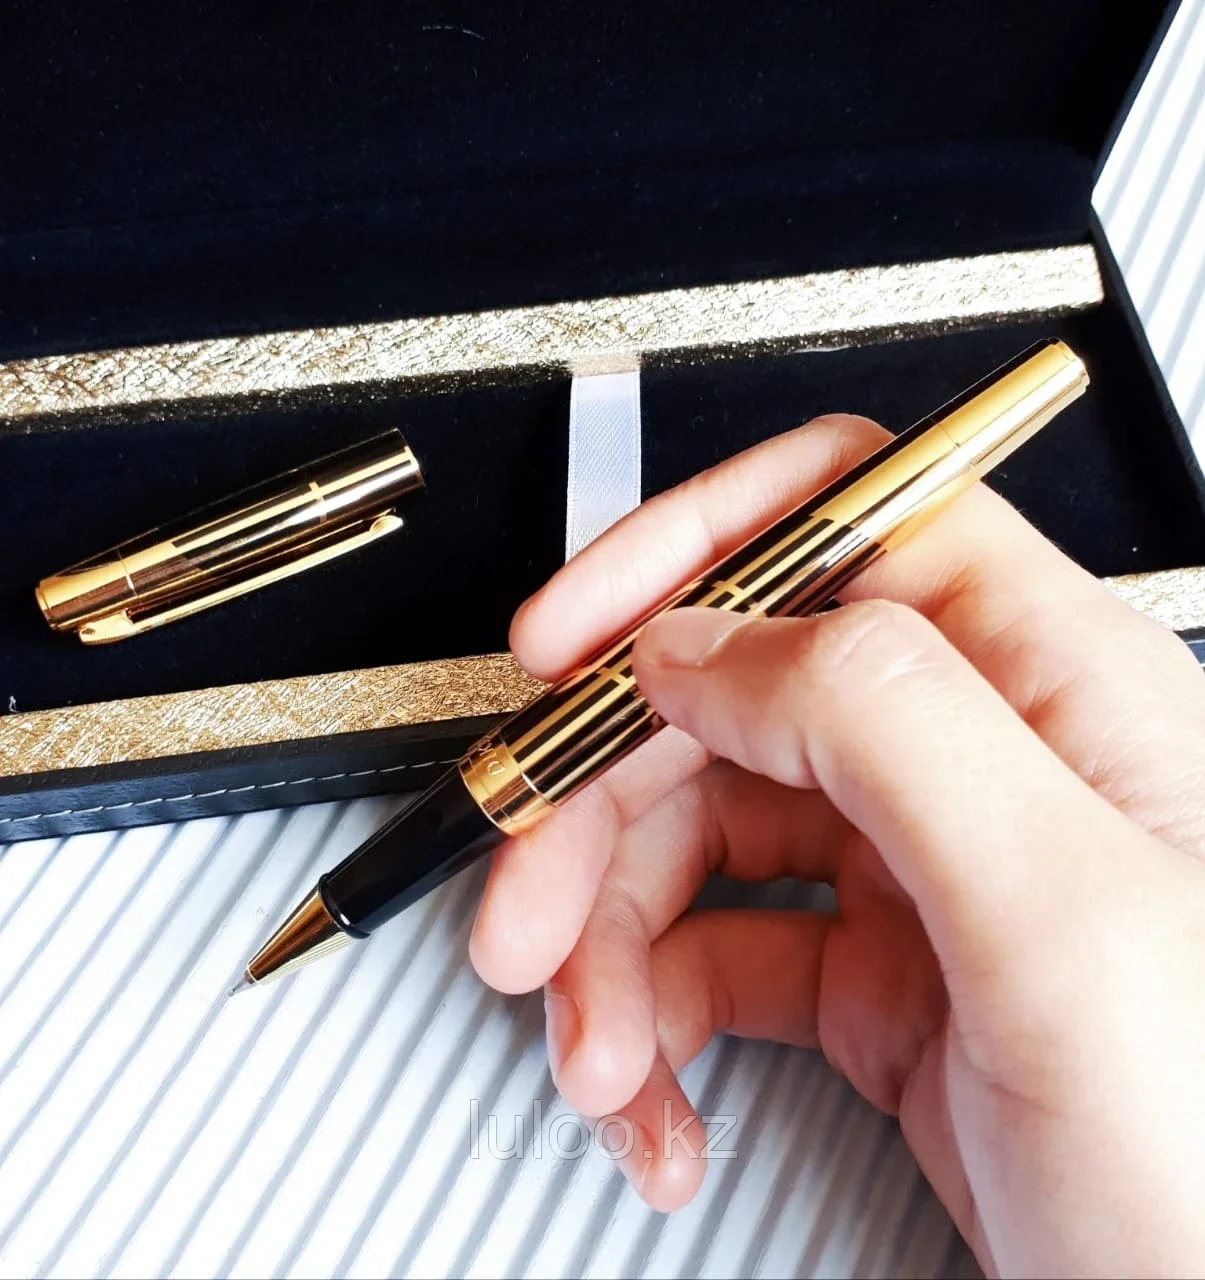 Ручка подарочная в футляре, золотистая с черными полосками., фото 1